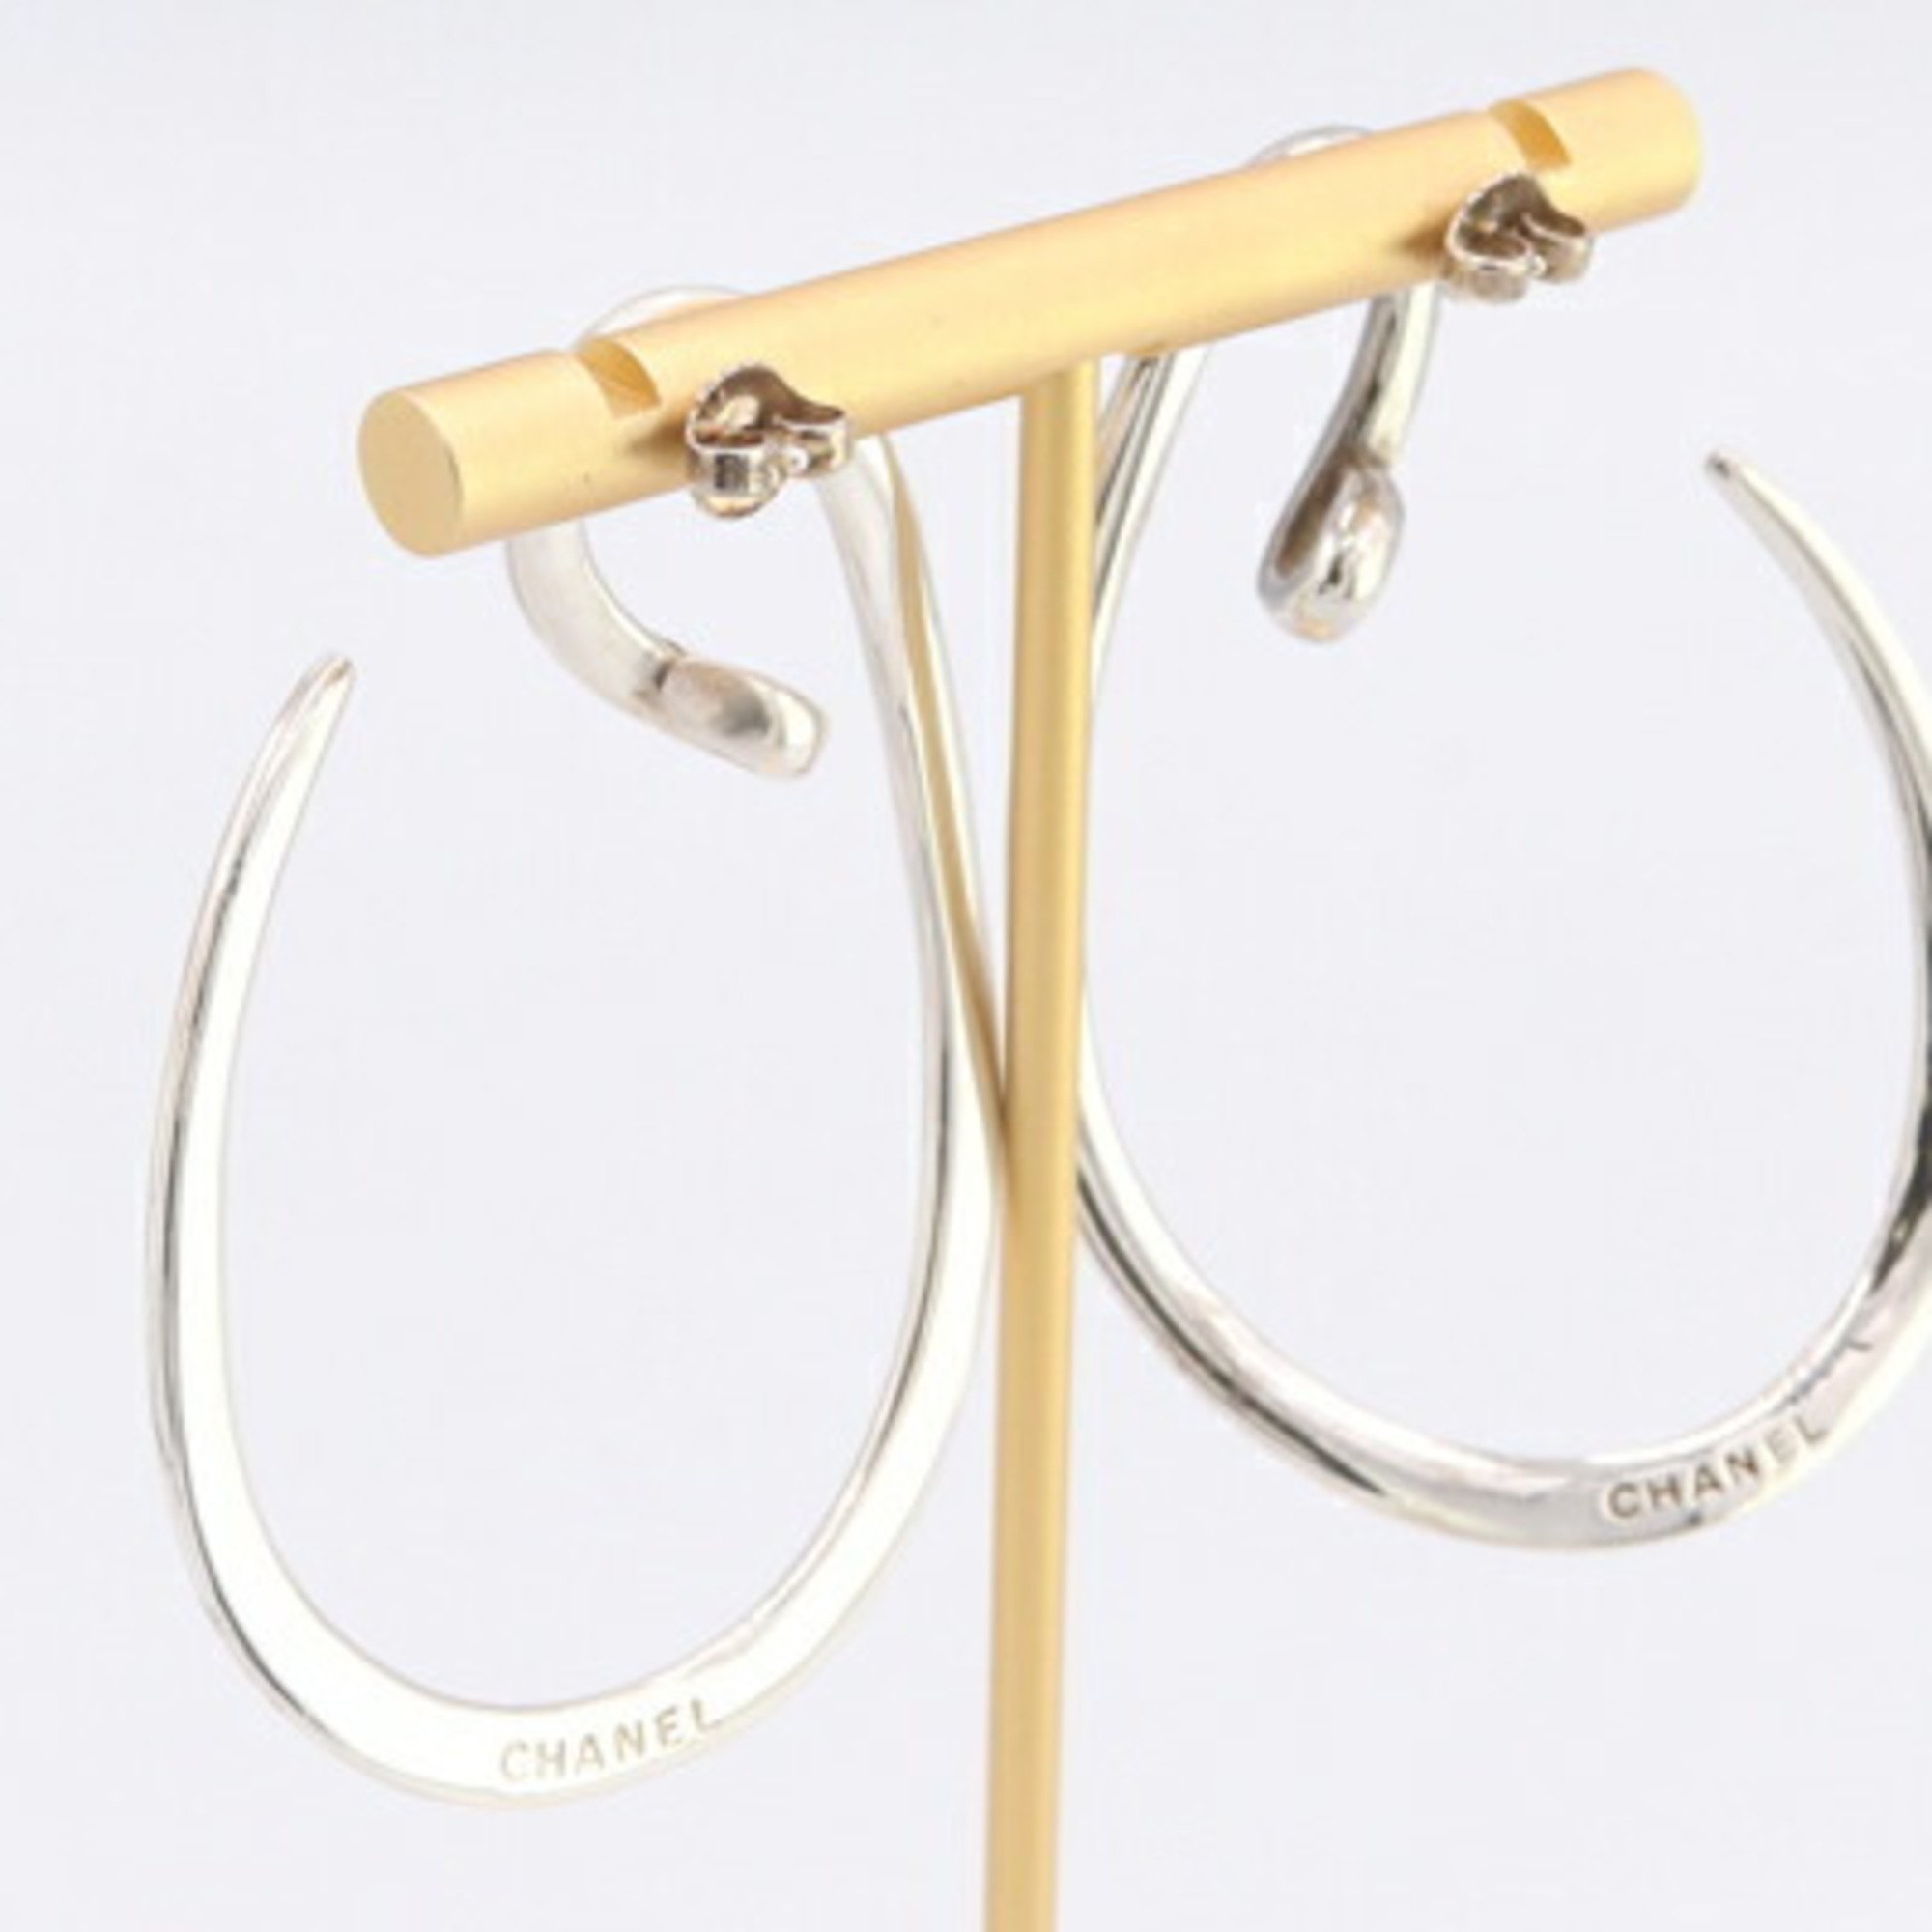 CHANEL Earrings Silver SV Sterling 925 Year Women's